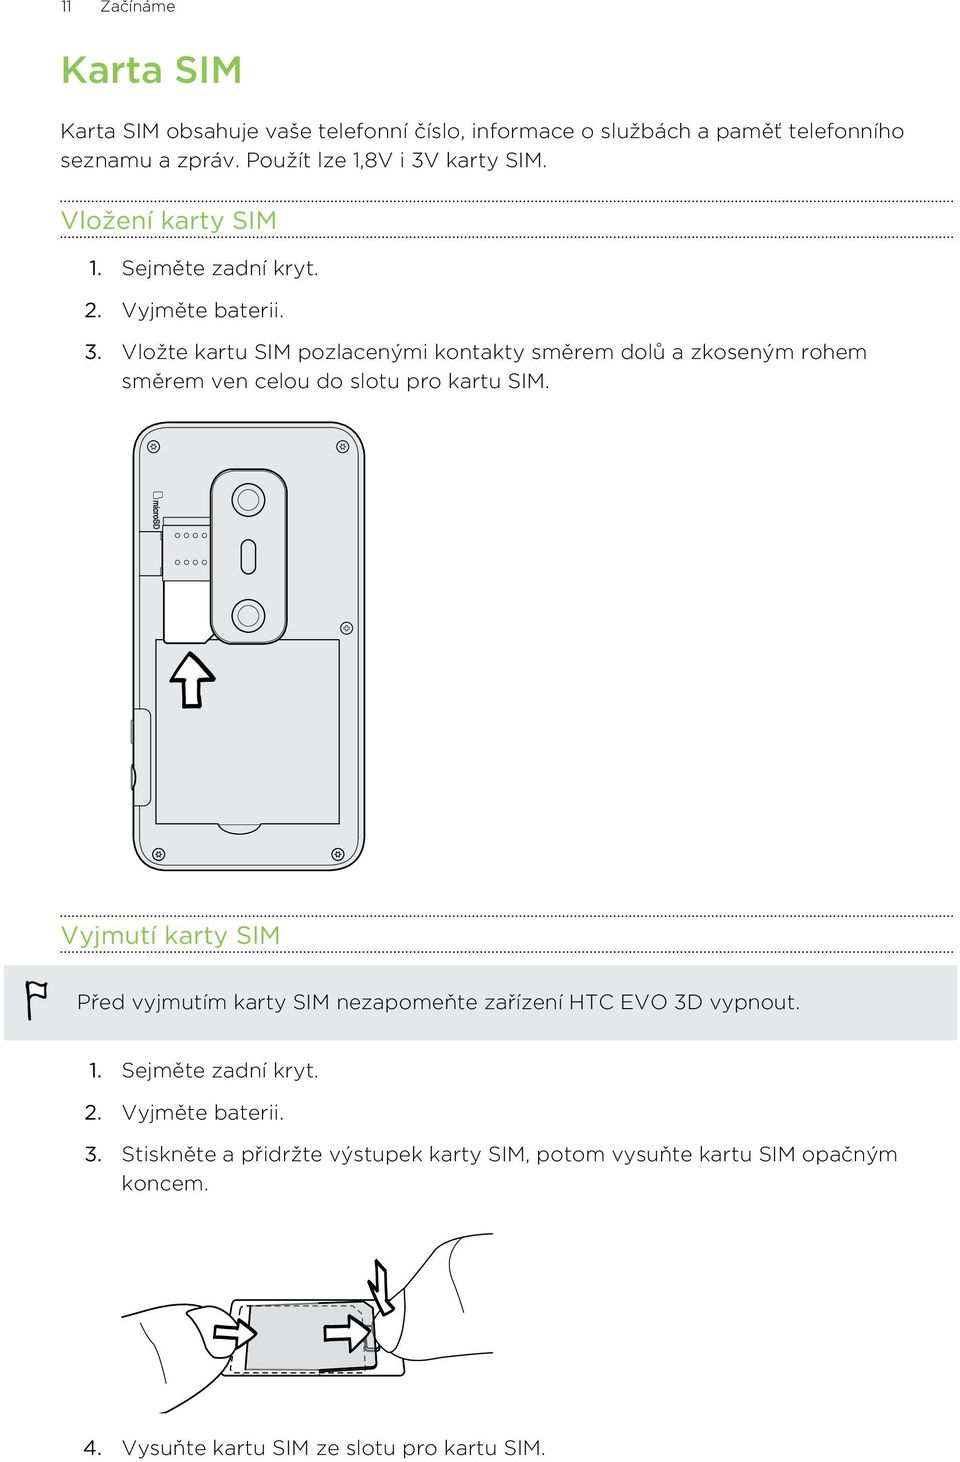 Vyjmutí karty SIM Před vyjmutím karty SIM nezapomeňte zařízení HTC EVO 3D